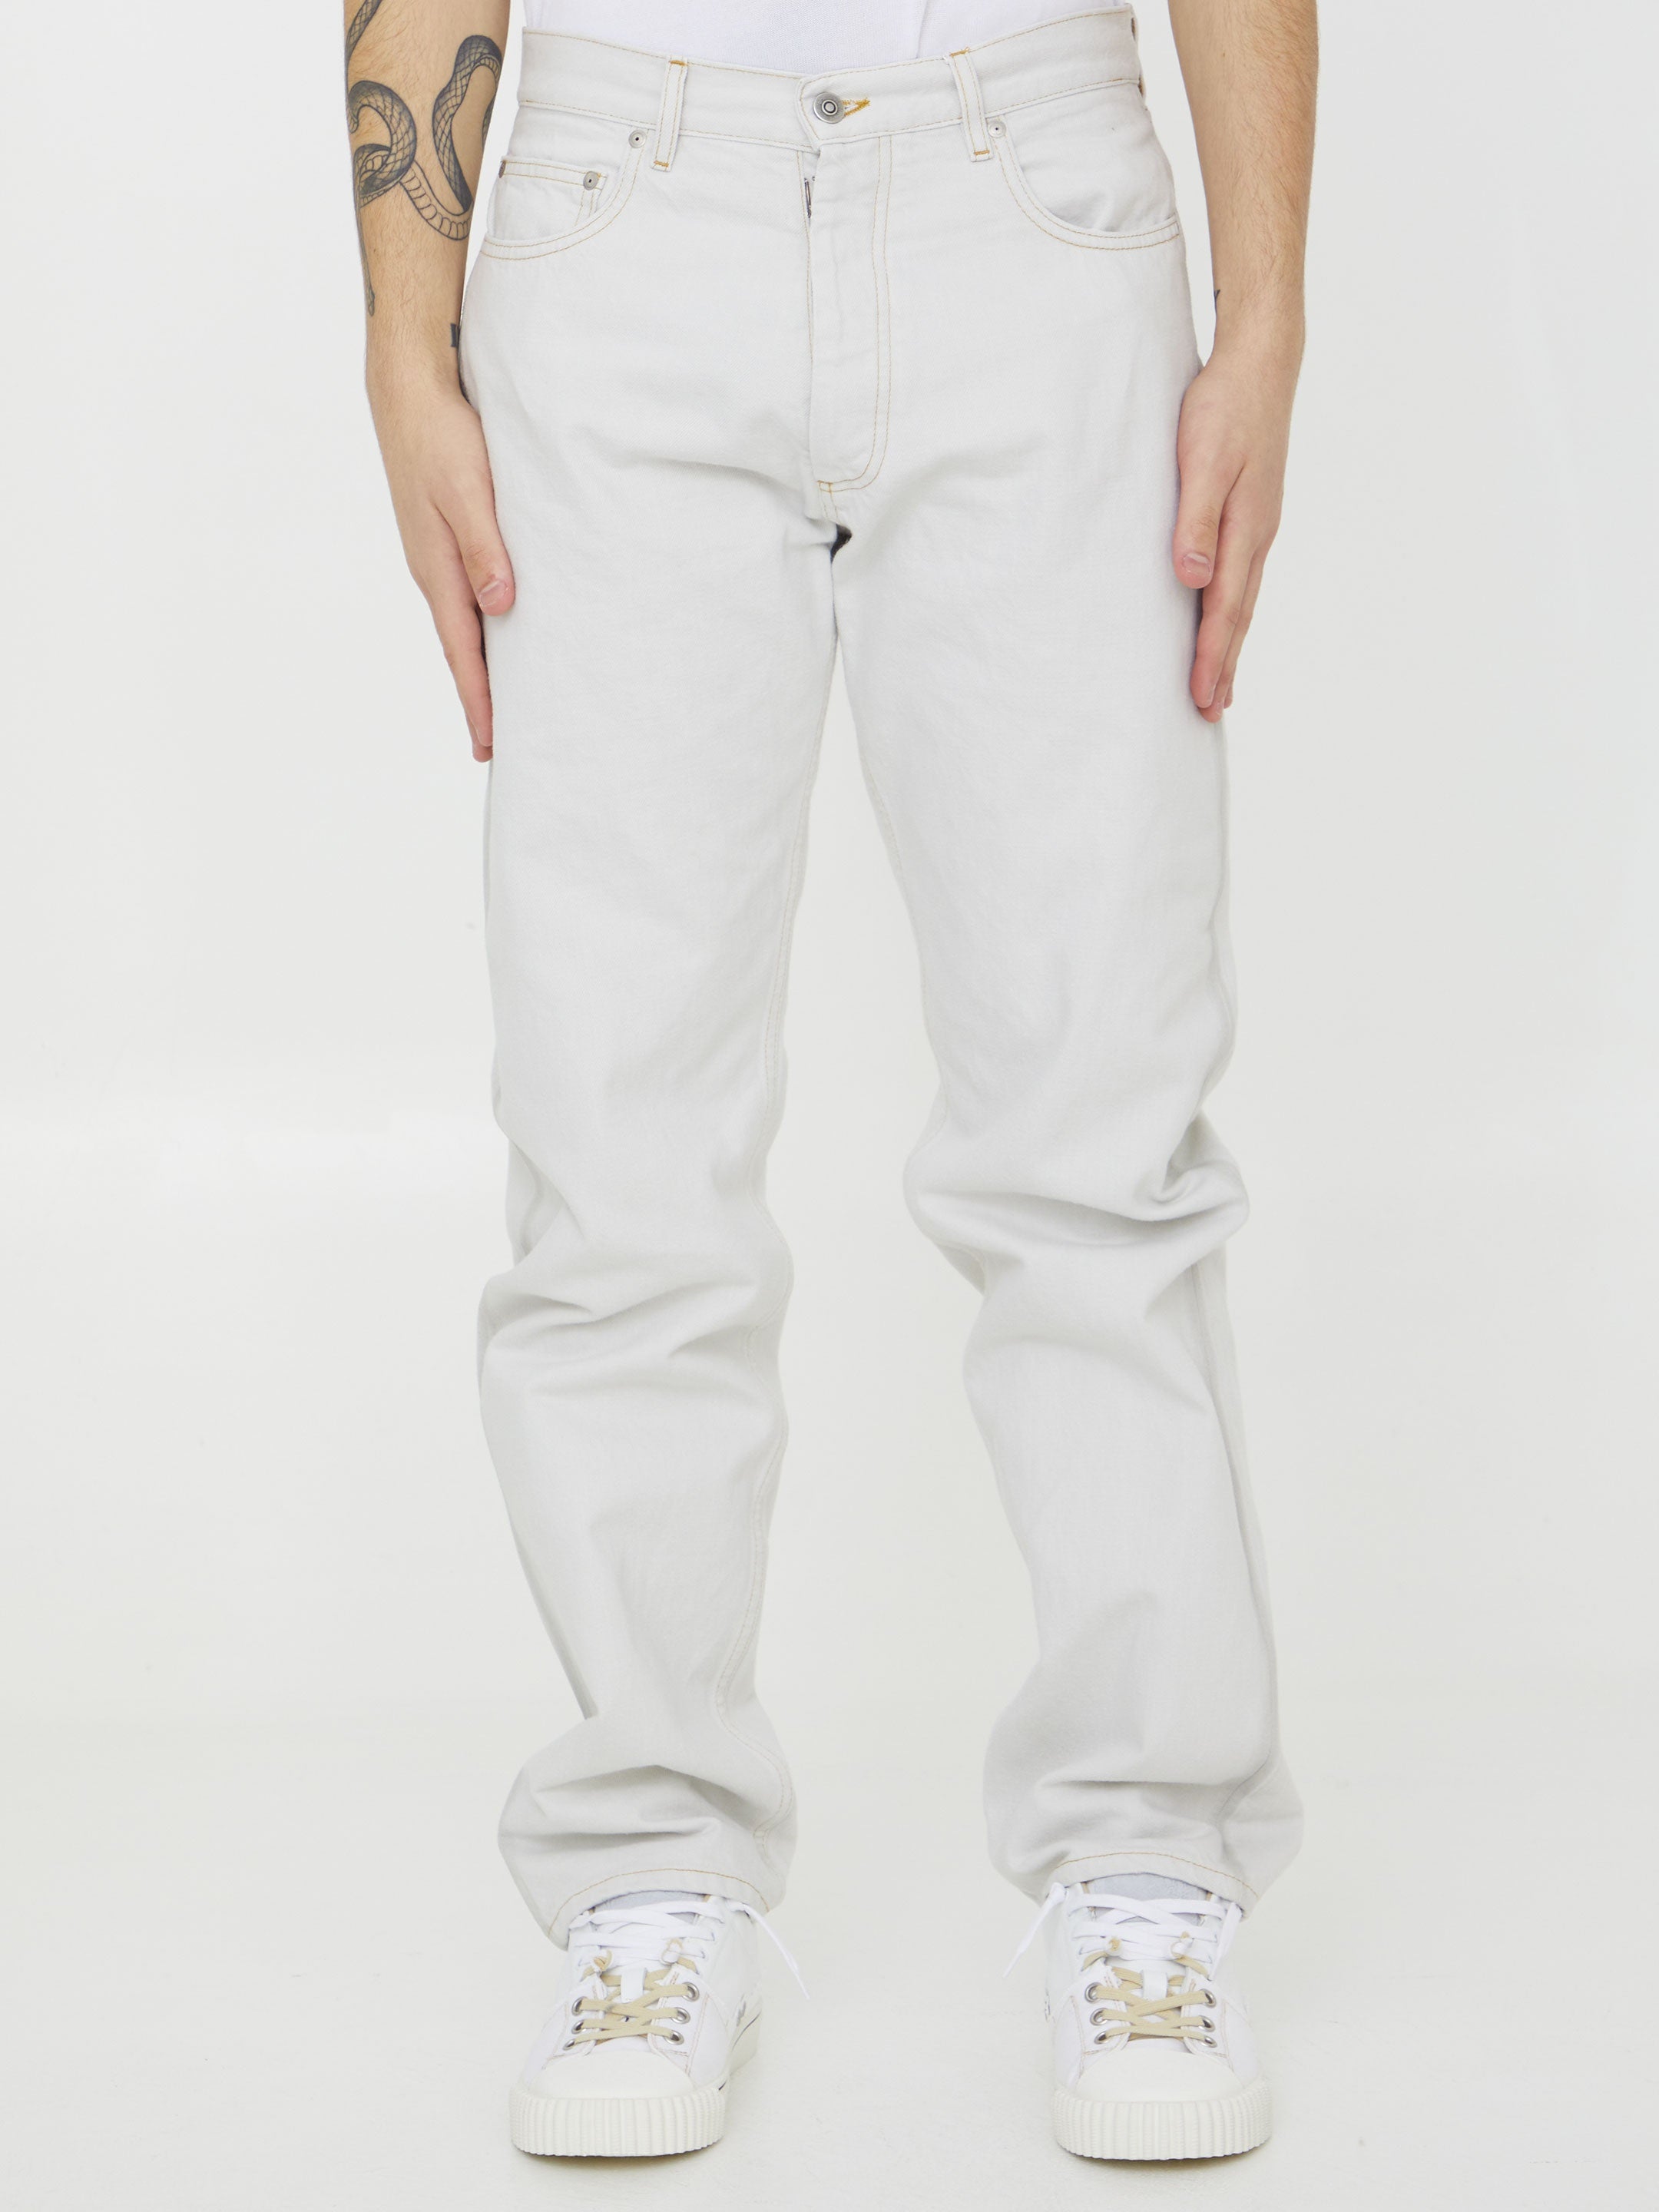 MAISON-MARGIELA-OUTLET-SALE-Cotton-denim-jeans-Jeans-34-WHITE-ARCHIVE-COLLECTION.jpg